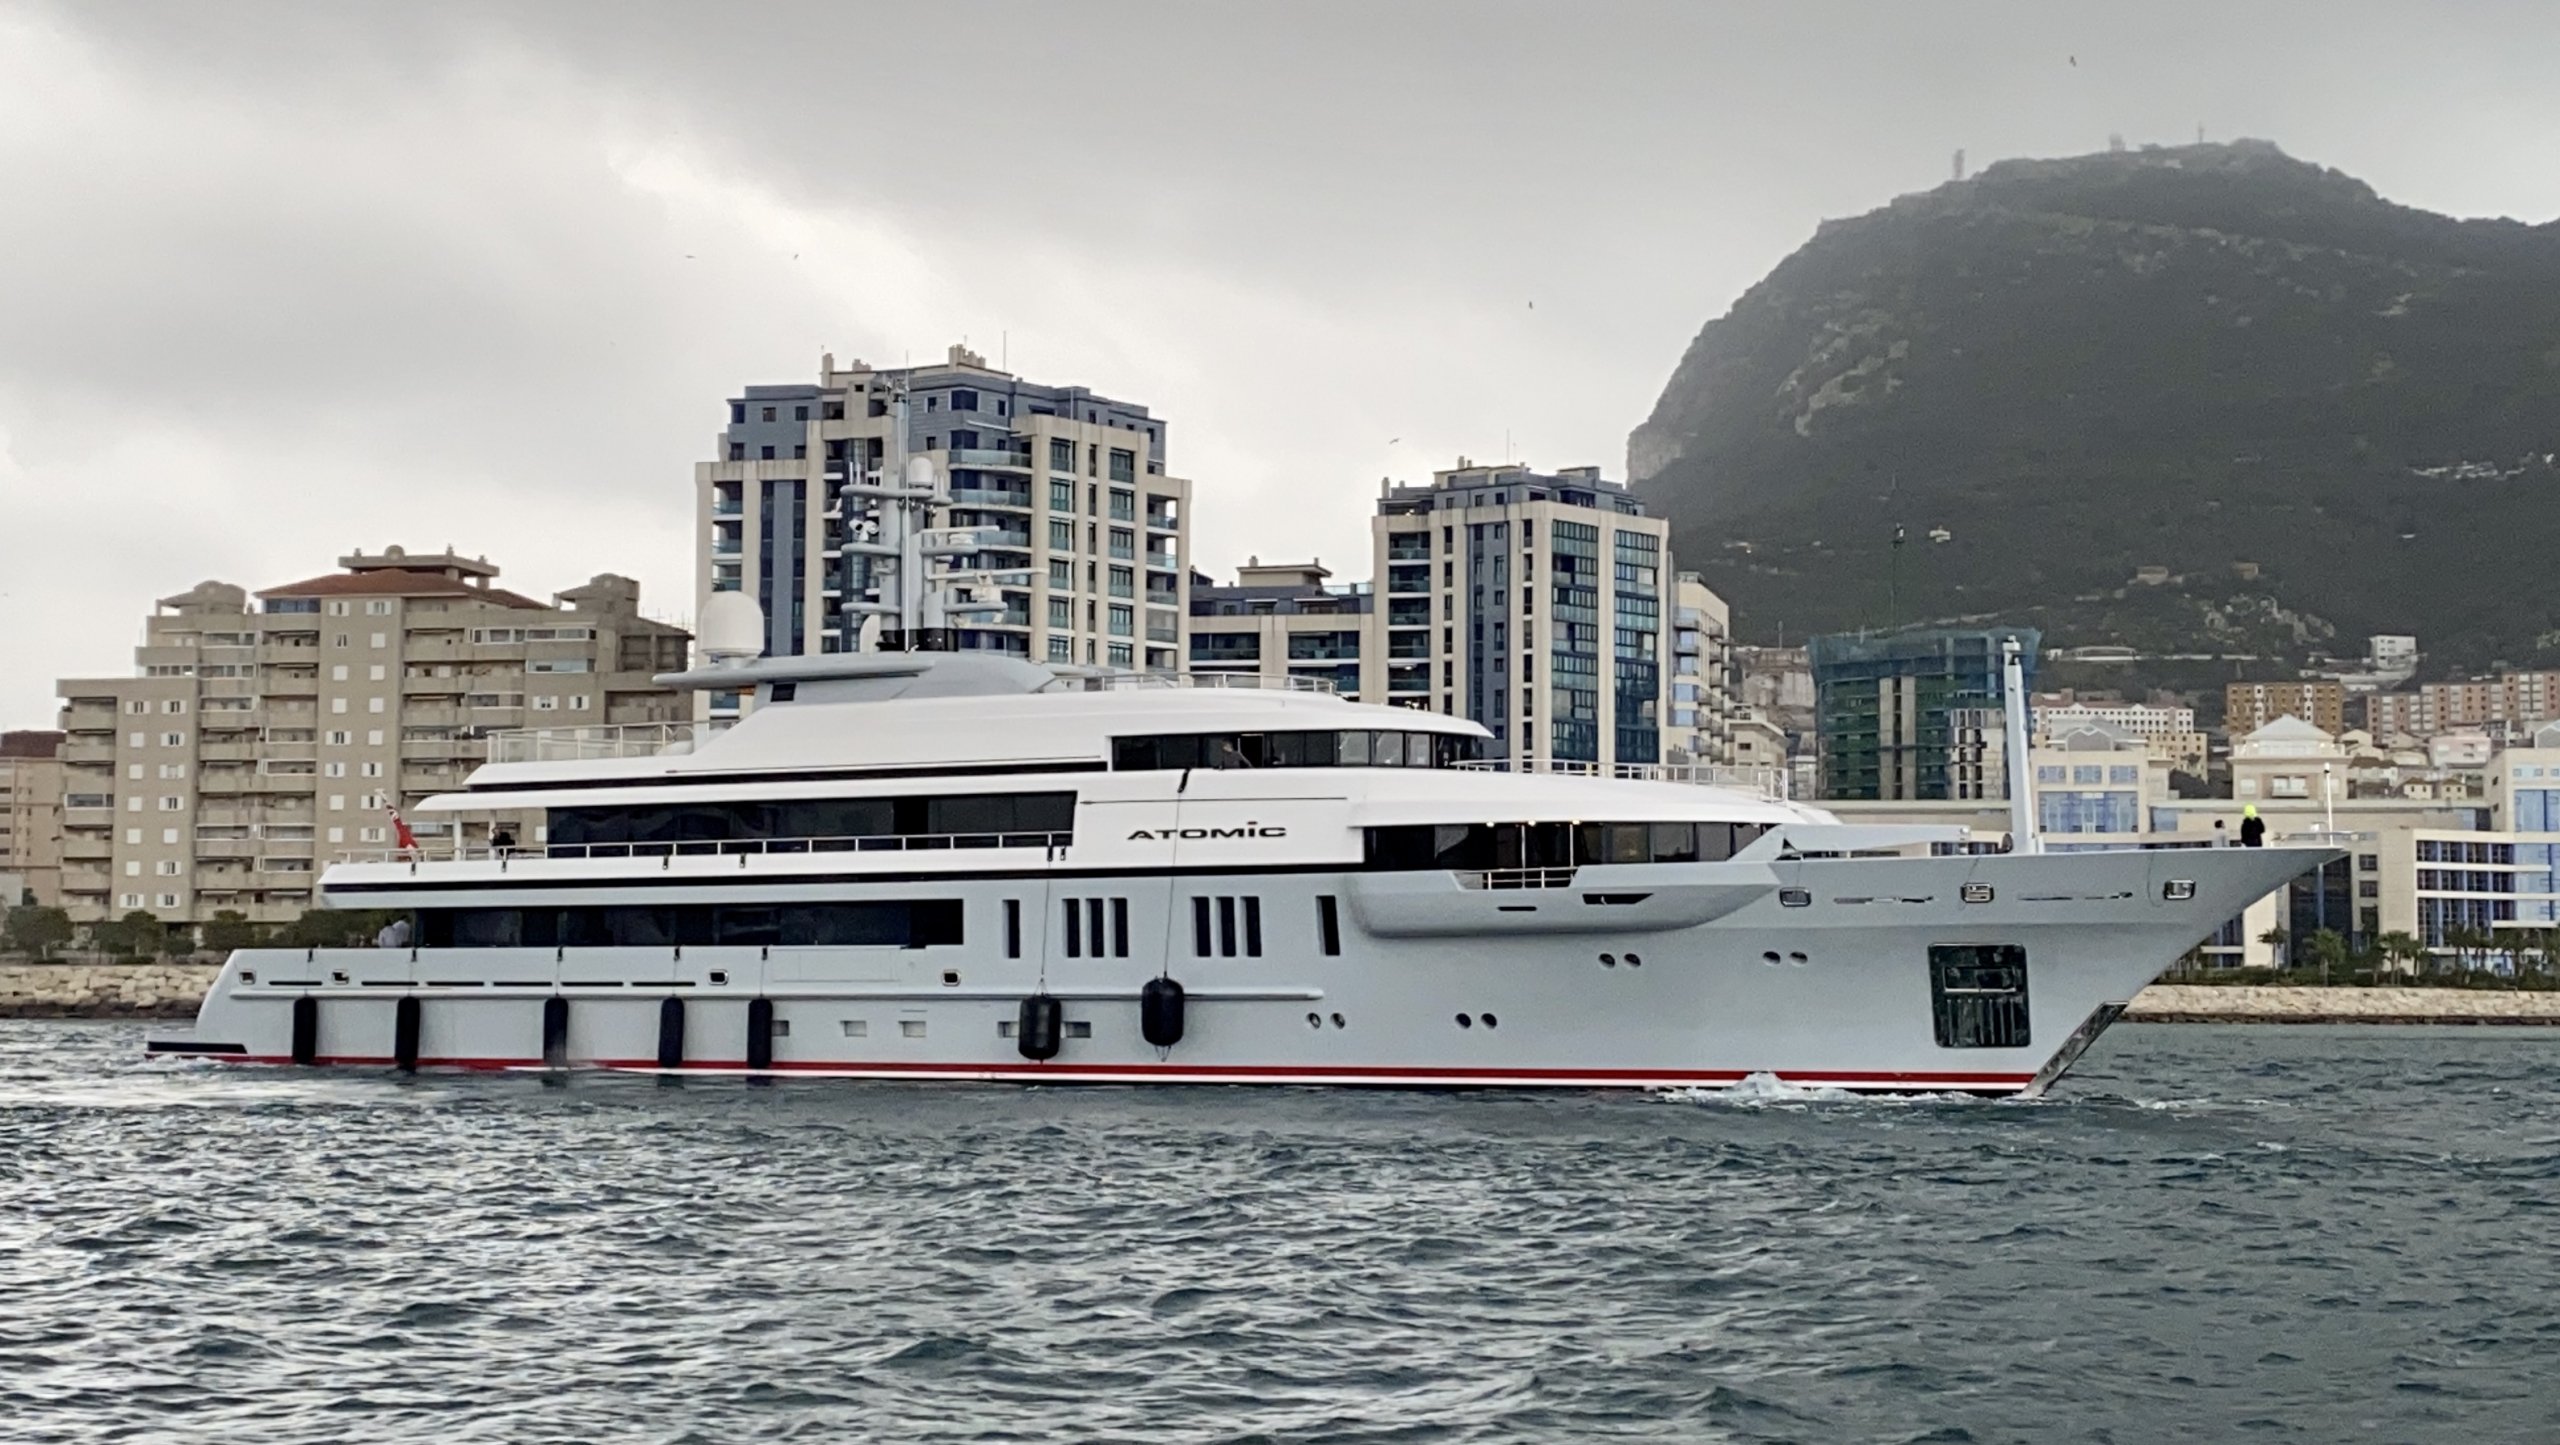 ATOMIC Yacht • VSY • 2020 • Owner Dan Huish